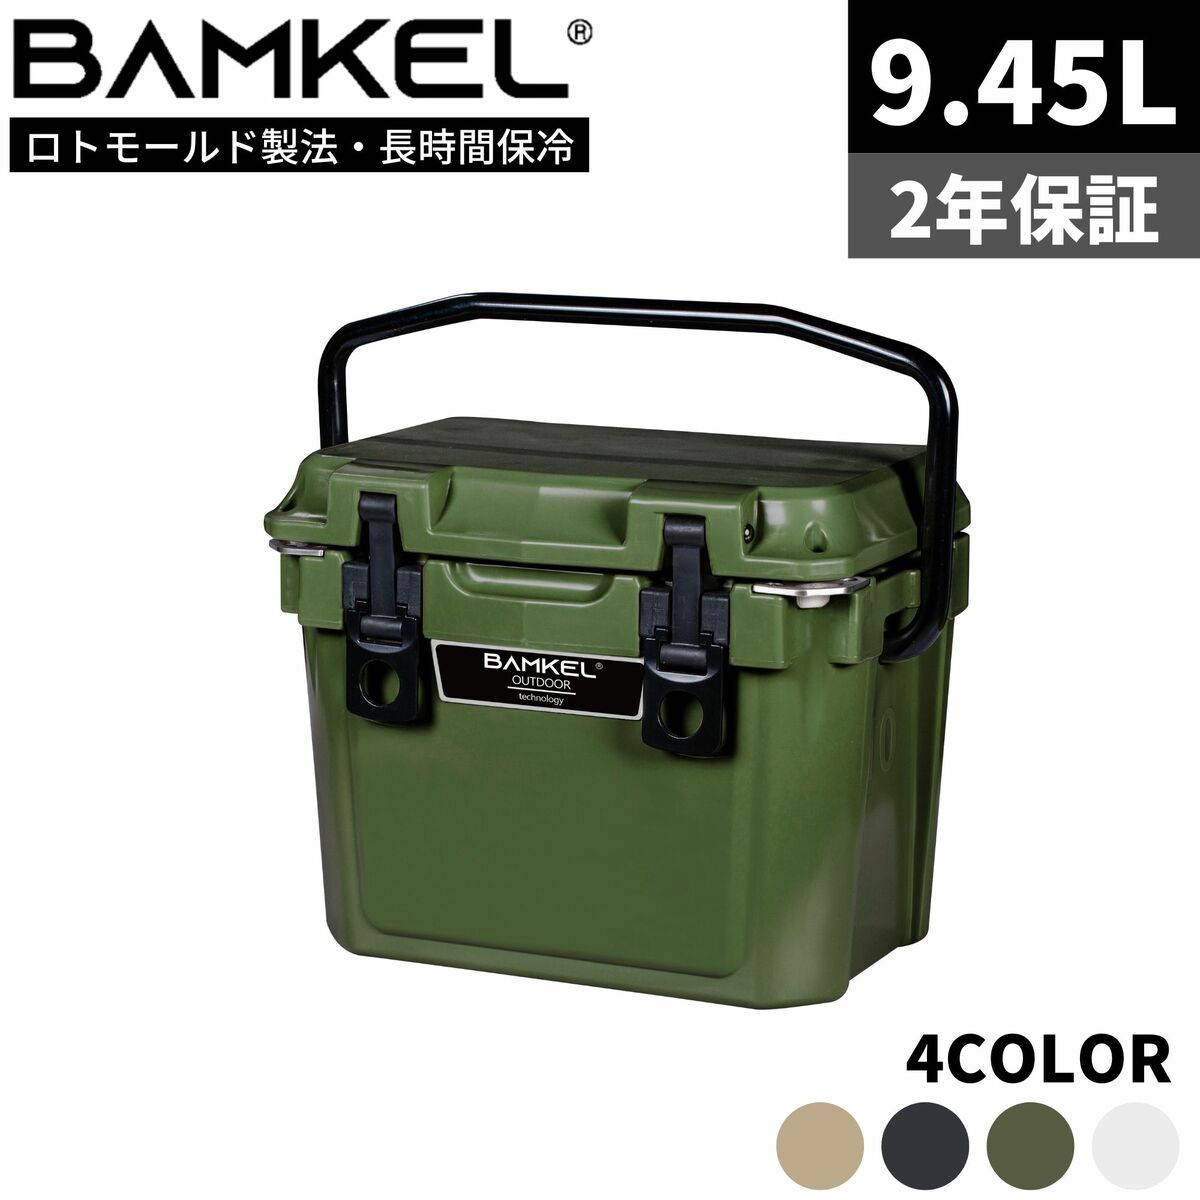 BAMKEL バンケル クーラーボックス 9.45L 長時間 保冷 選べるカラー サイズ 高耐久 ハードクーラー アウトドア キャンプ 韓国ブランド カーキ 正規品 日本限定モデル